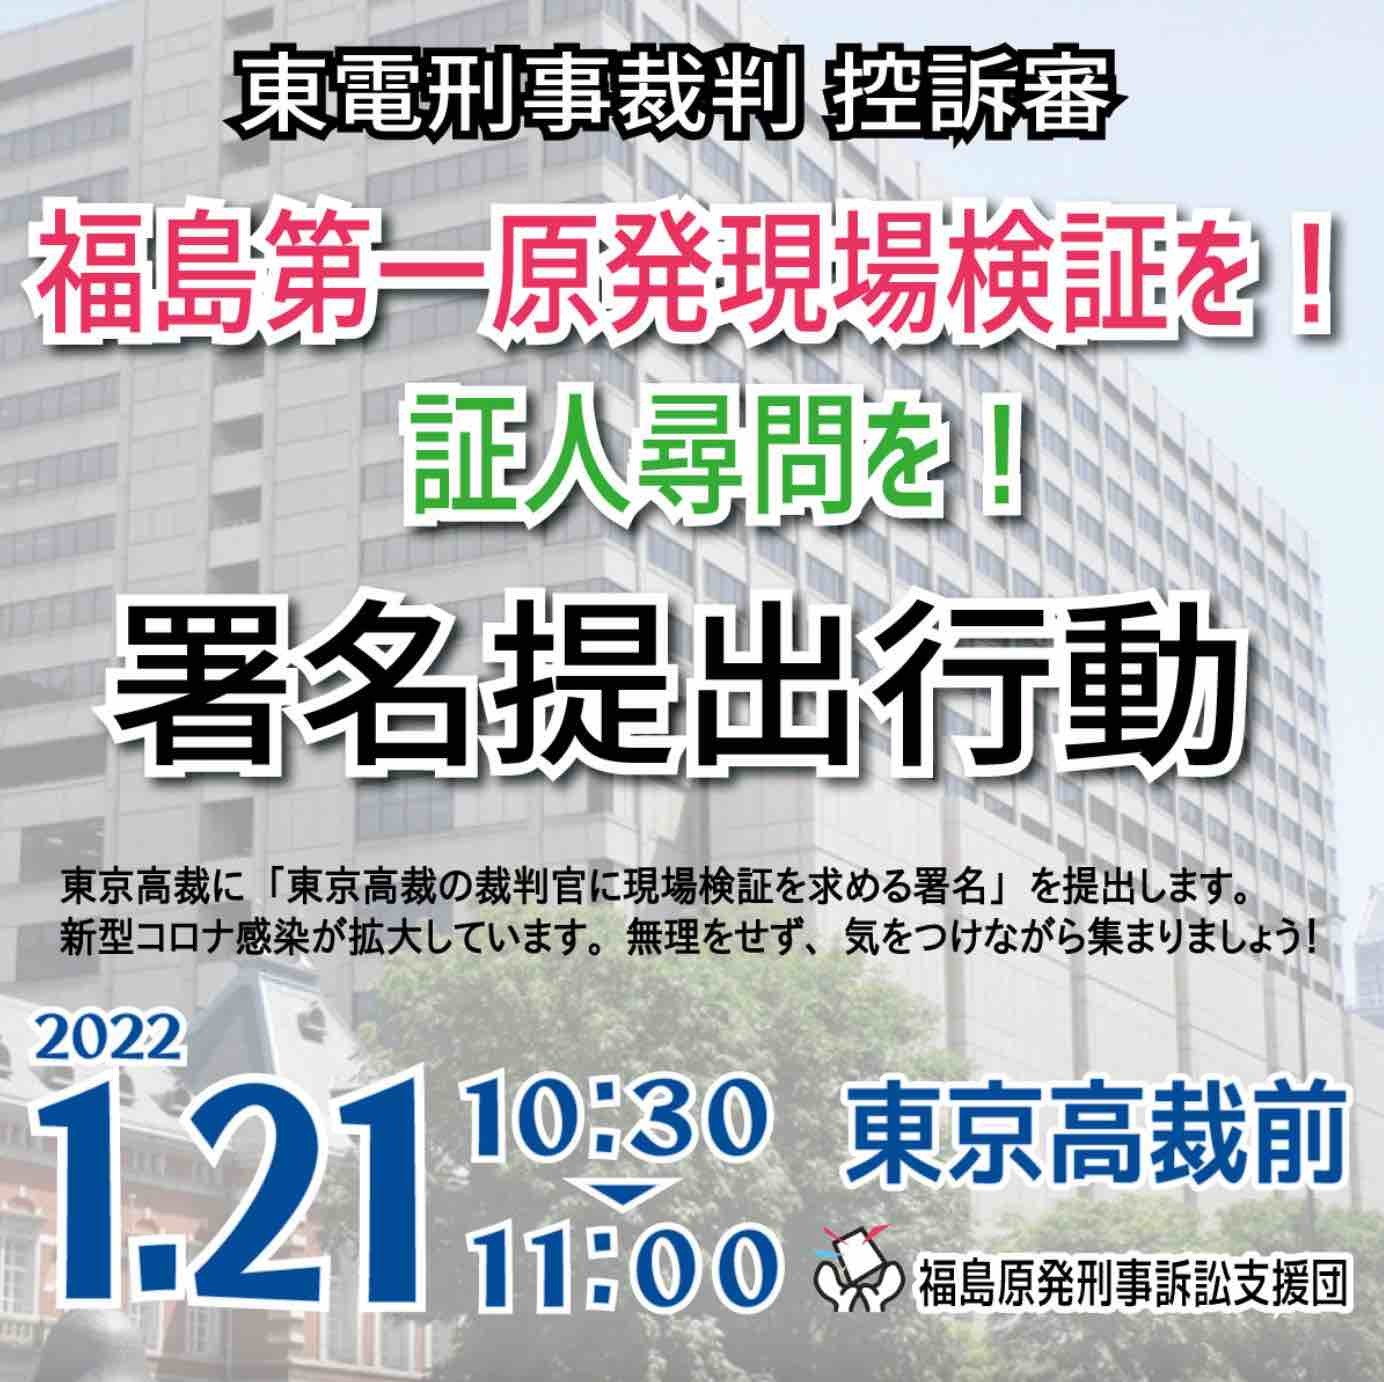 1月21日、東京高裁に「現場検証を求める署名」第3次提出行動へ_e0068696_16072367.jpg